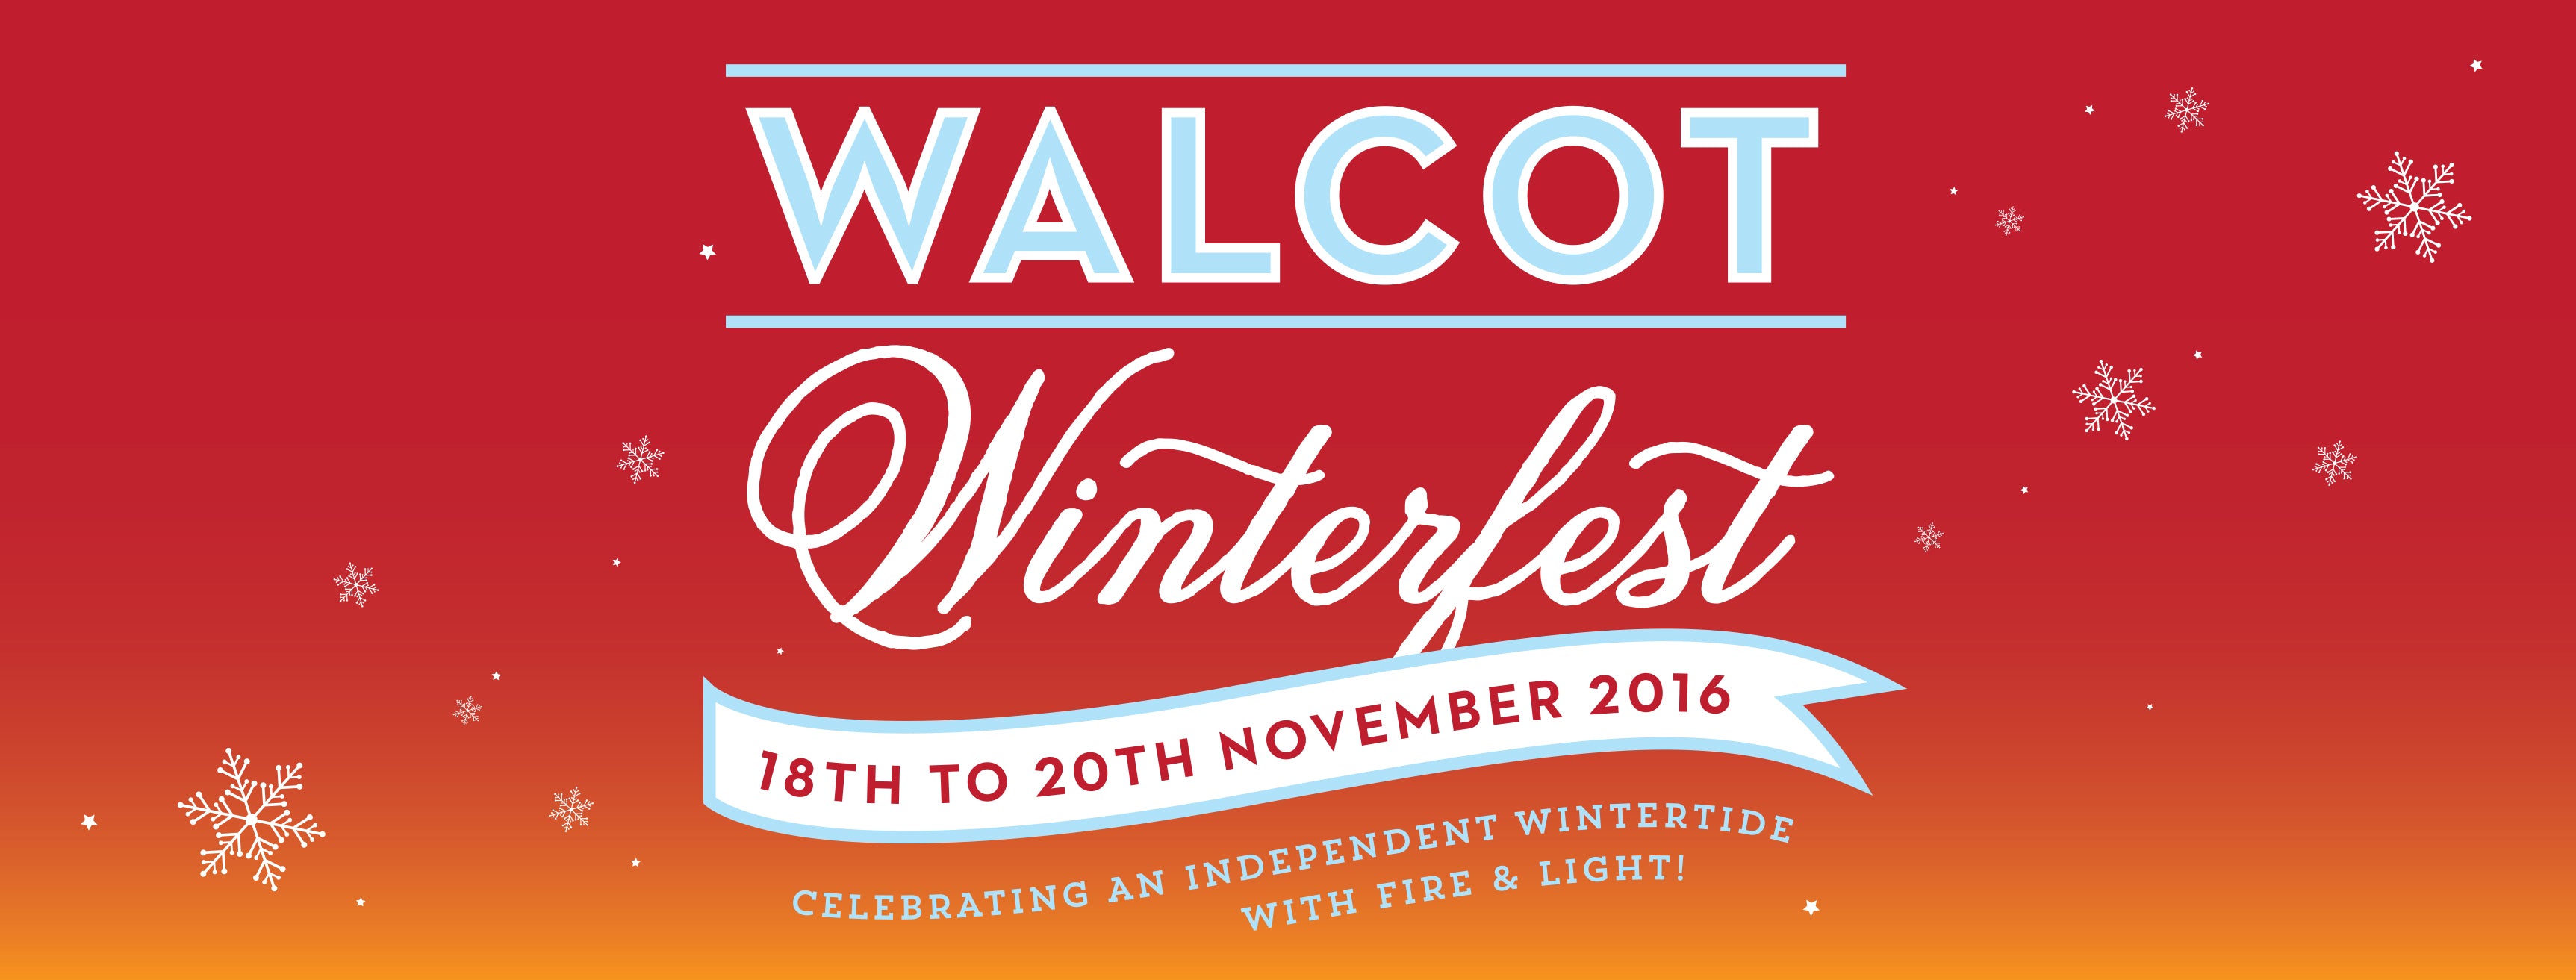 Walcot Winterfest